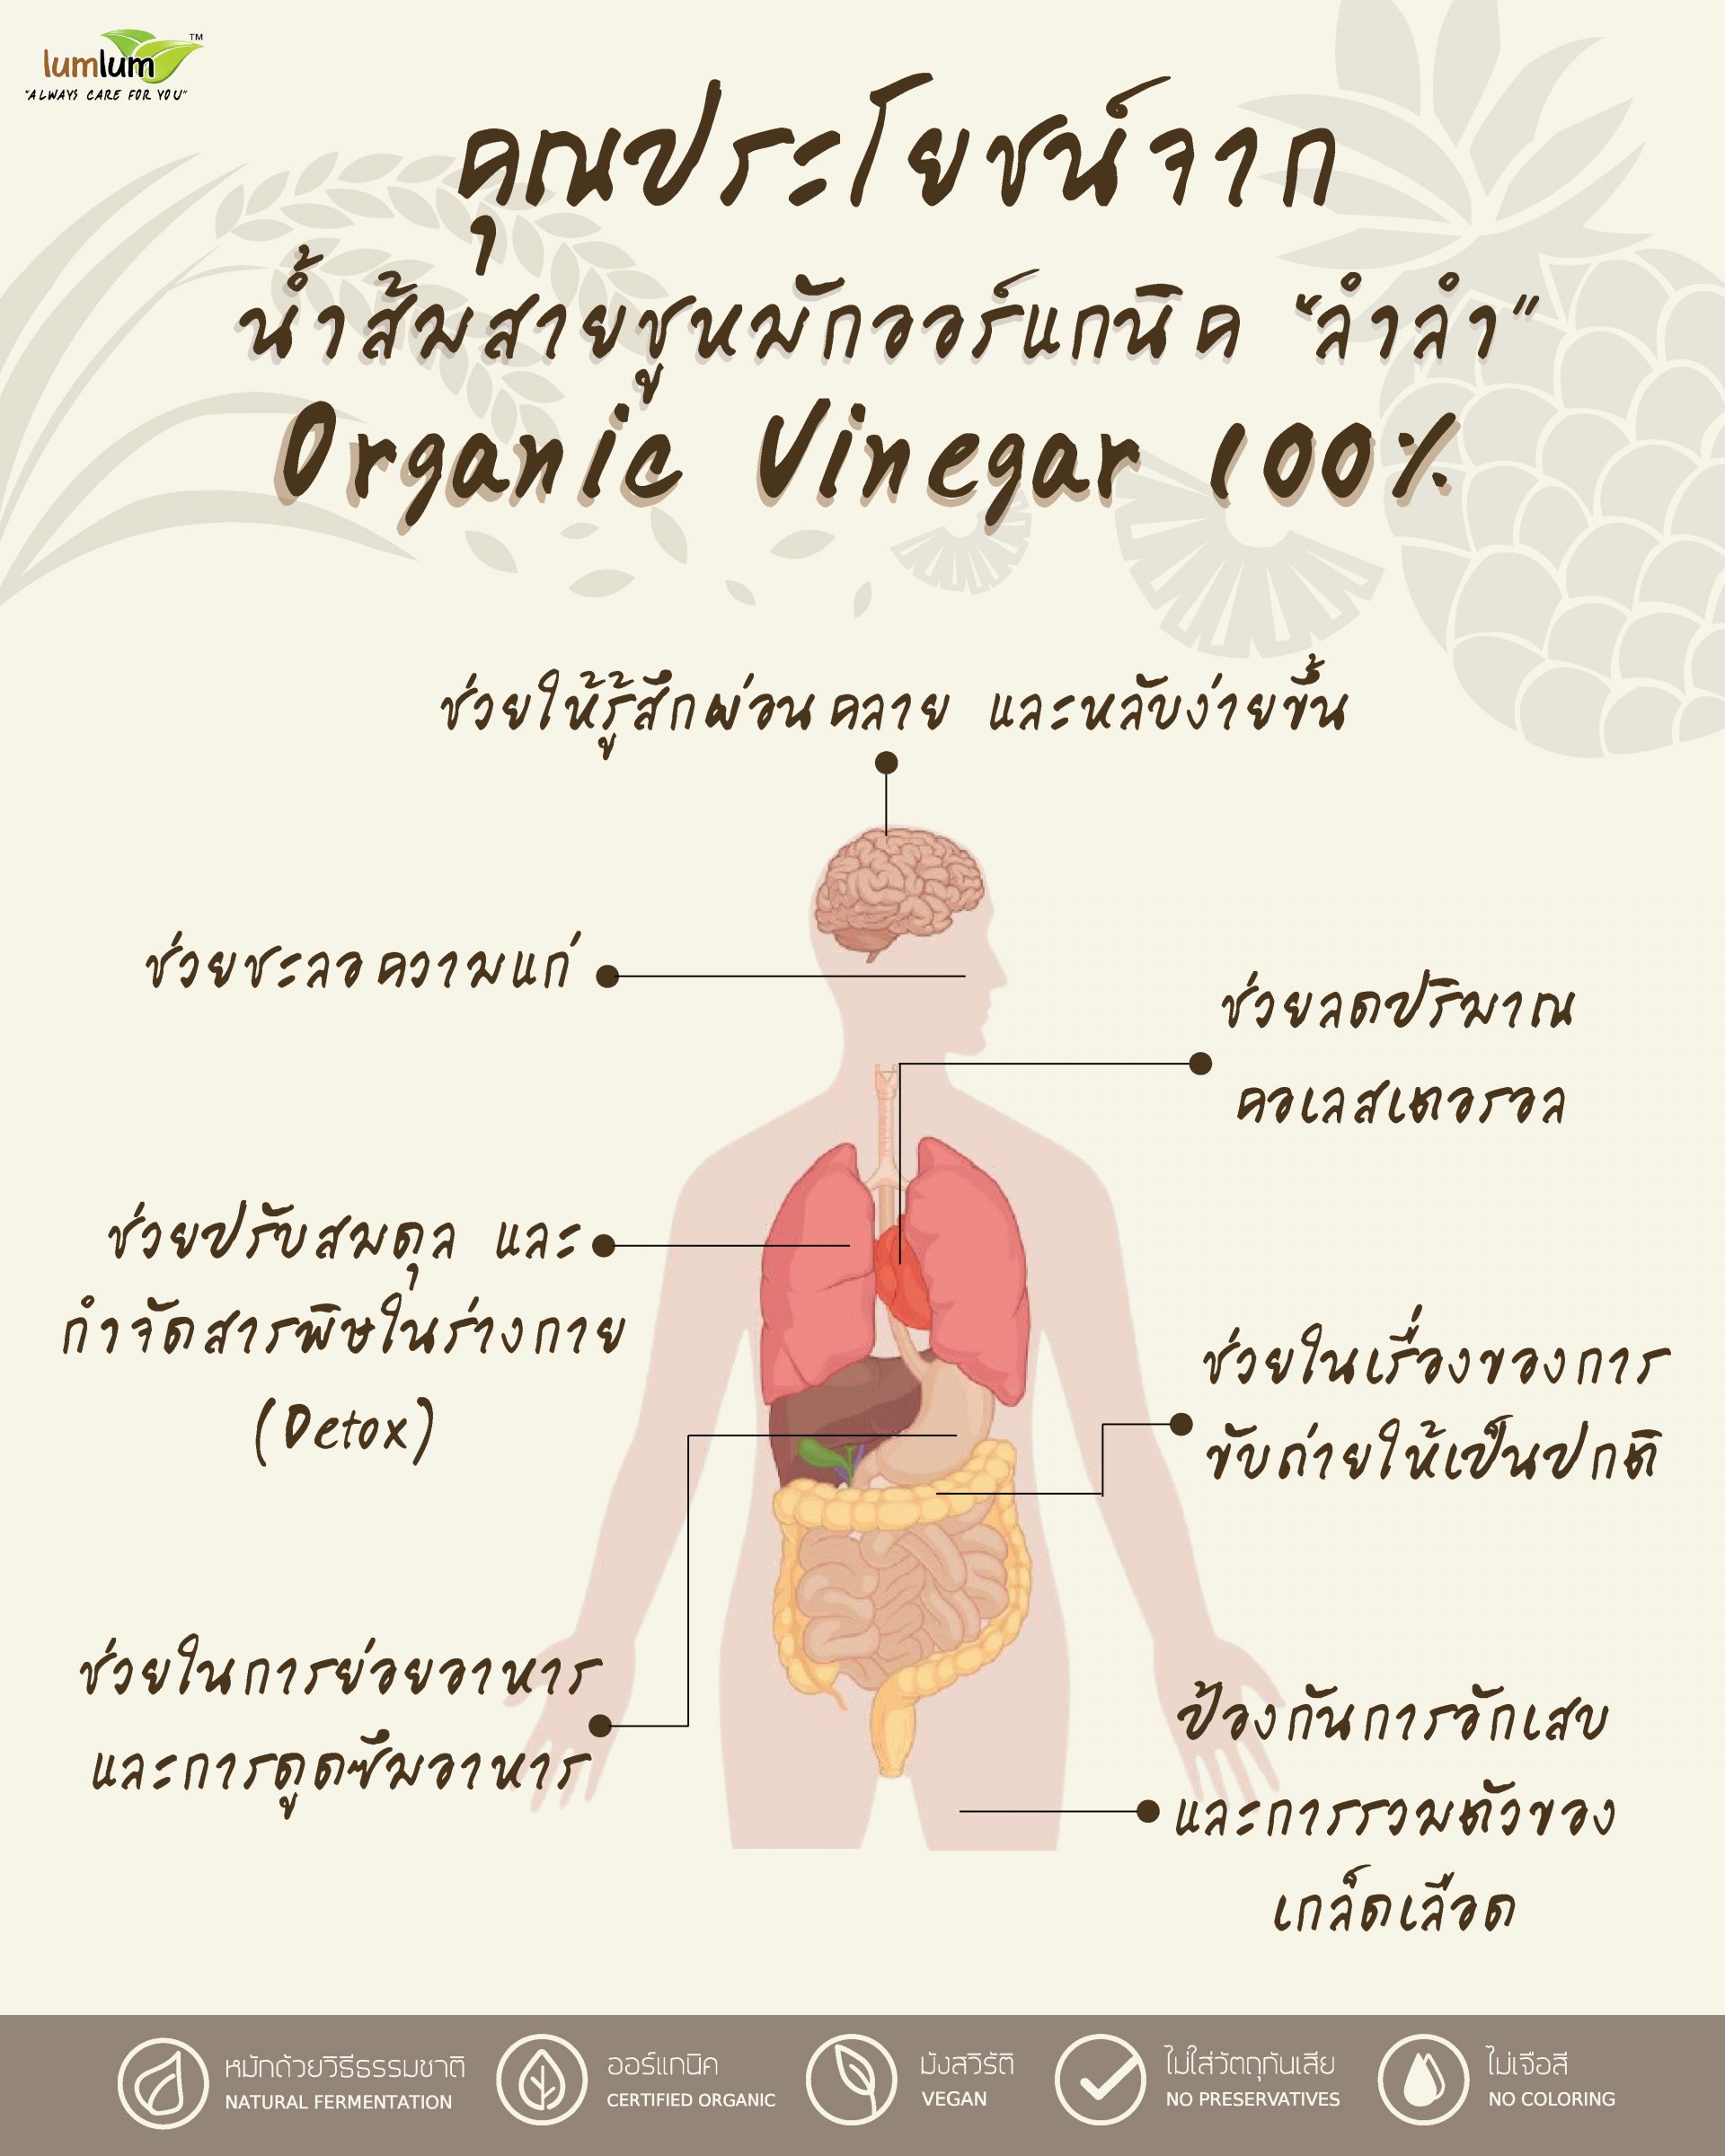 น้ำส้มสายชูหมัก benefits of fermented vinegar